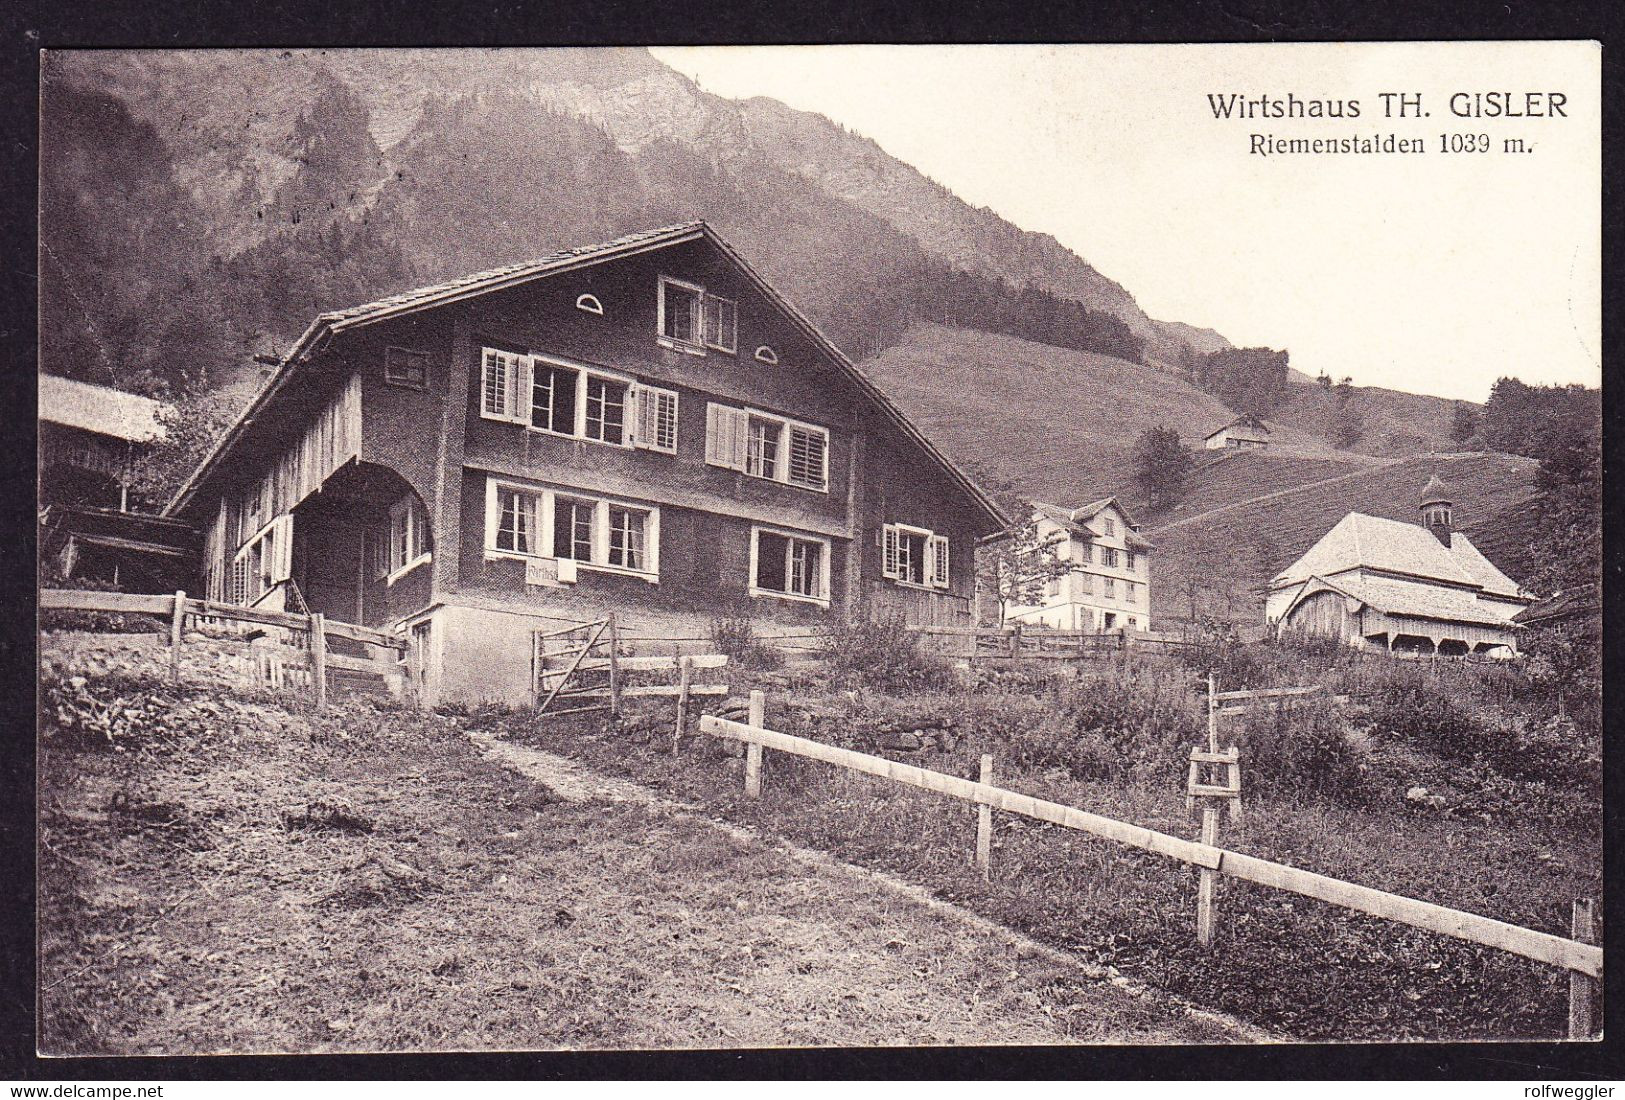 1916 AK Mit Wirtshaus Gisler In Riemenstalden Nach Basel Gelaufen. Stempel SISKON Und RIEMENSTALDEN. 2 Kleine Flecken - Riemenstalden